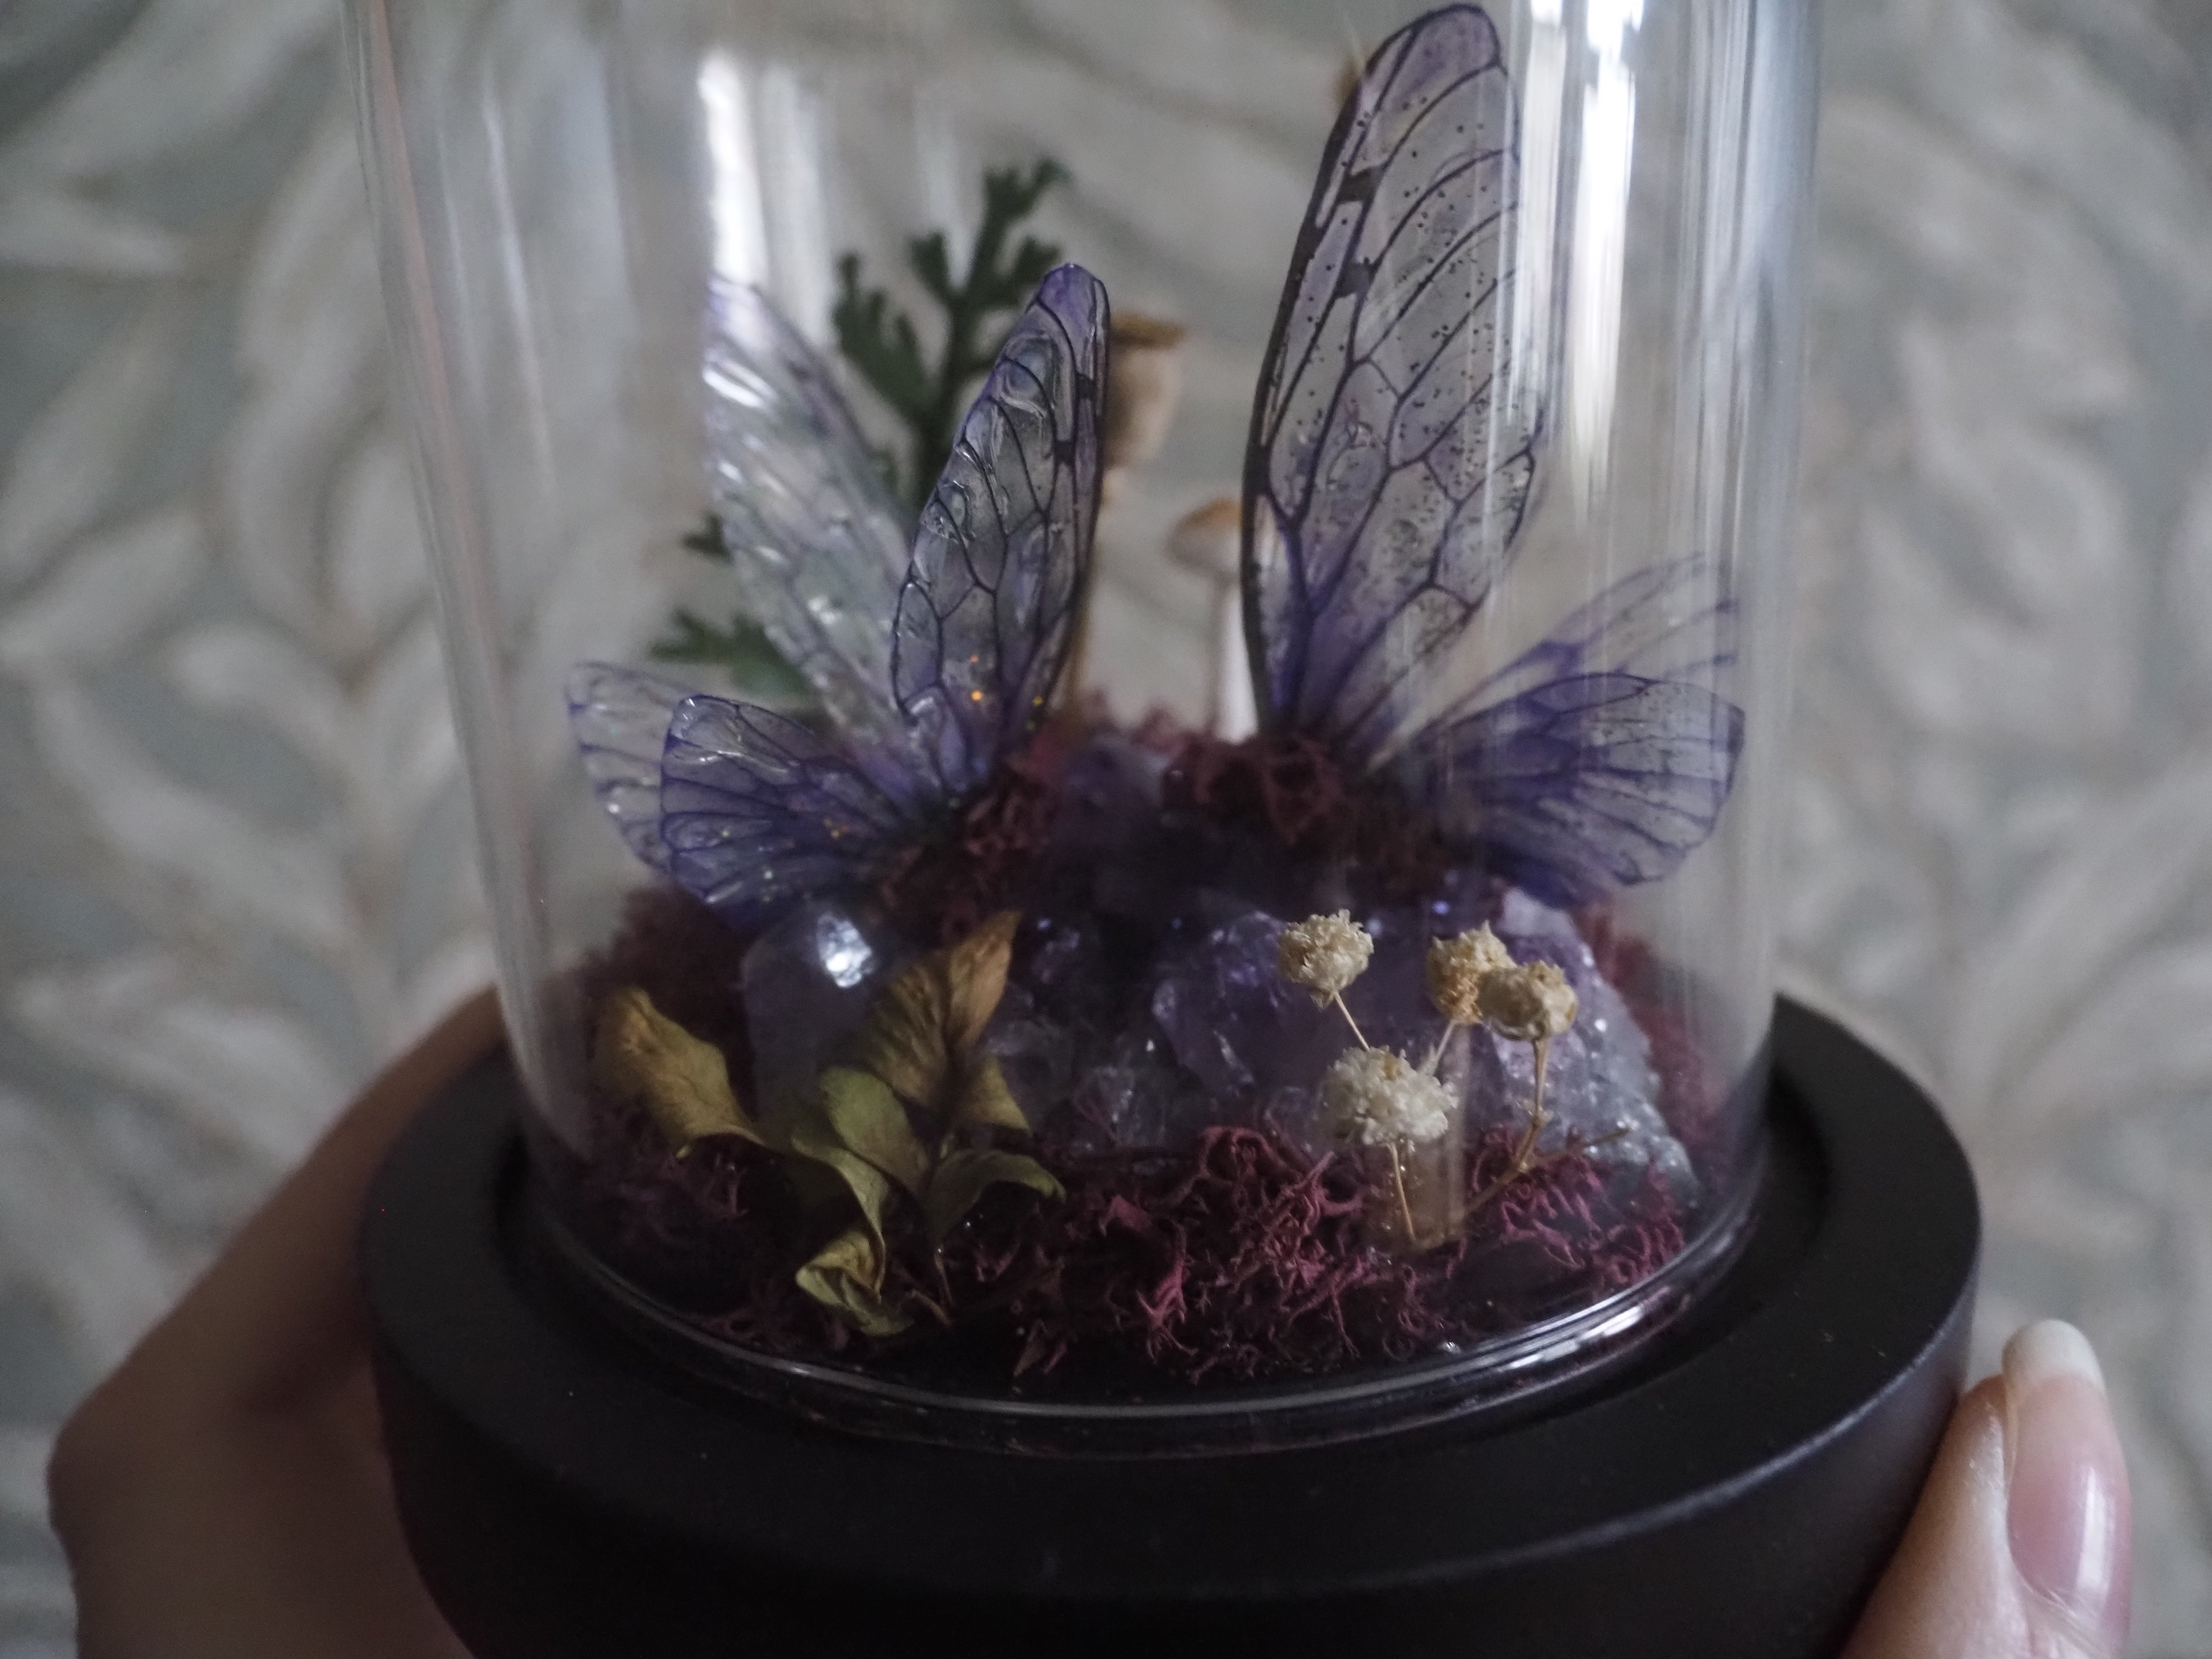 OOAK purple amethyst globe small